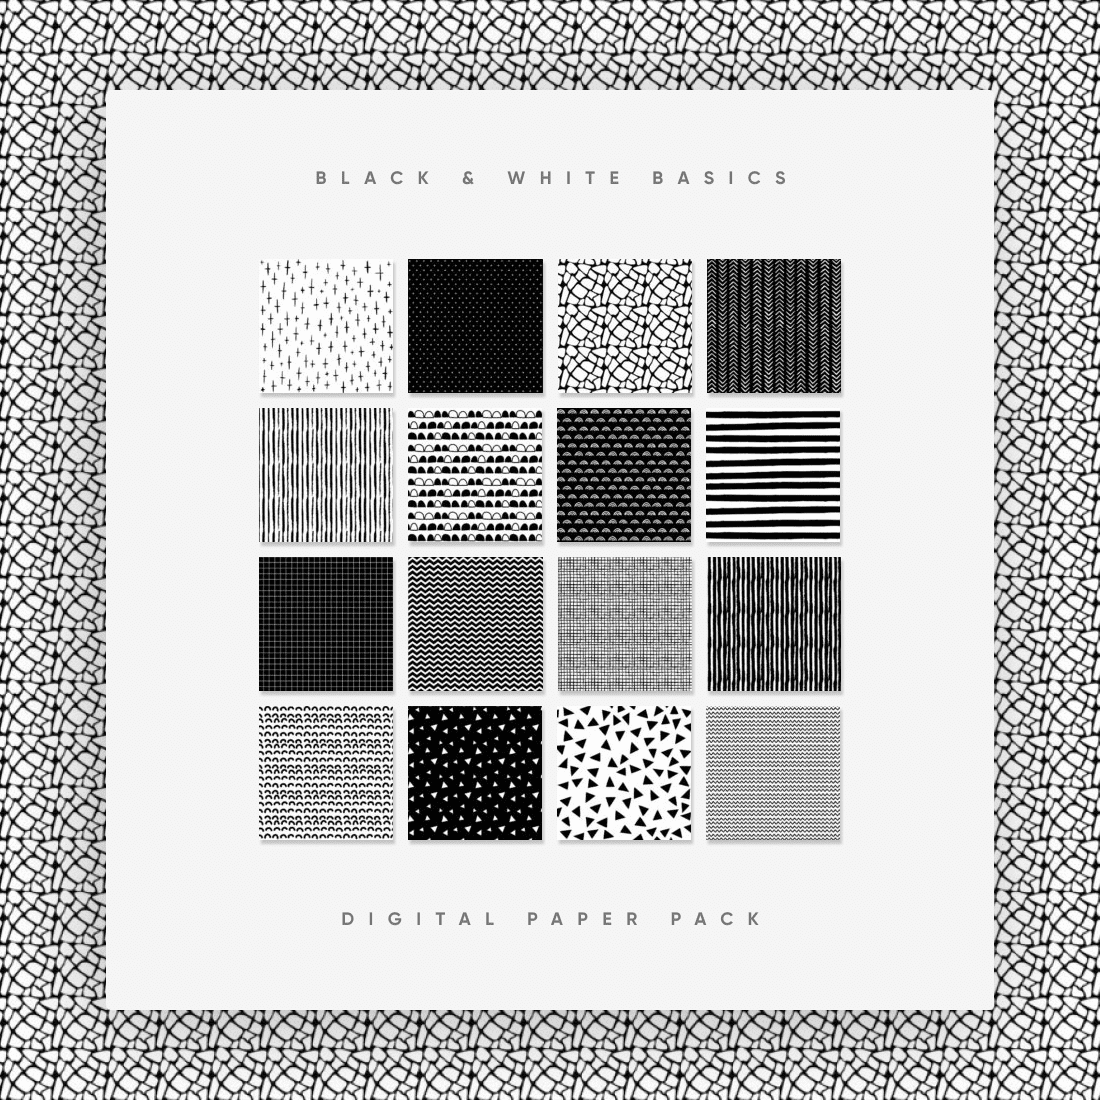 Black & White Basics Digital Paper Pack cover.